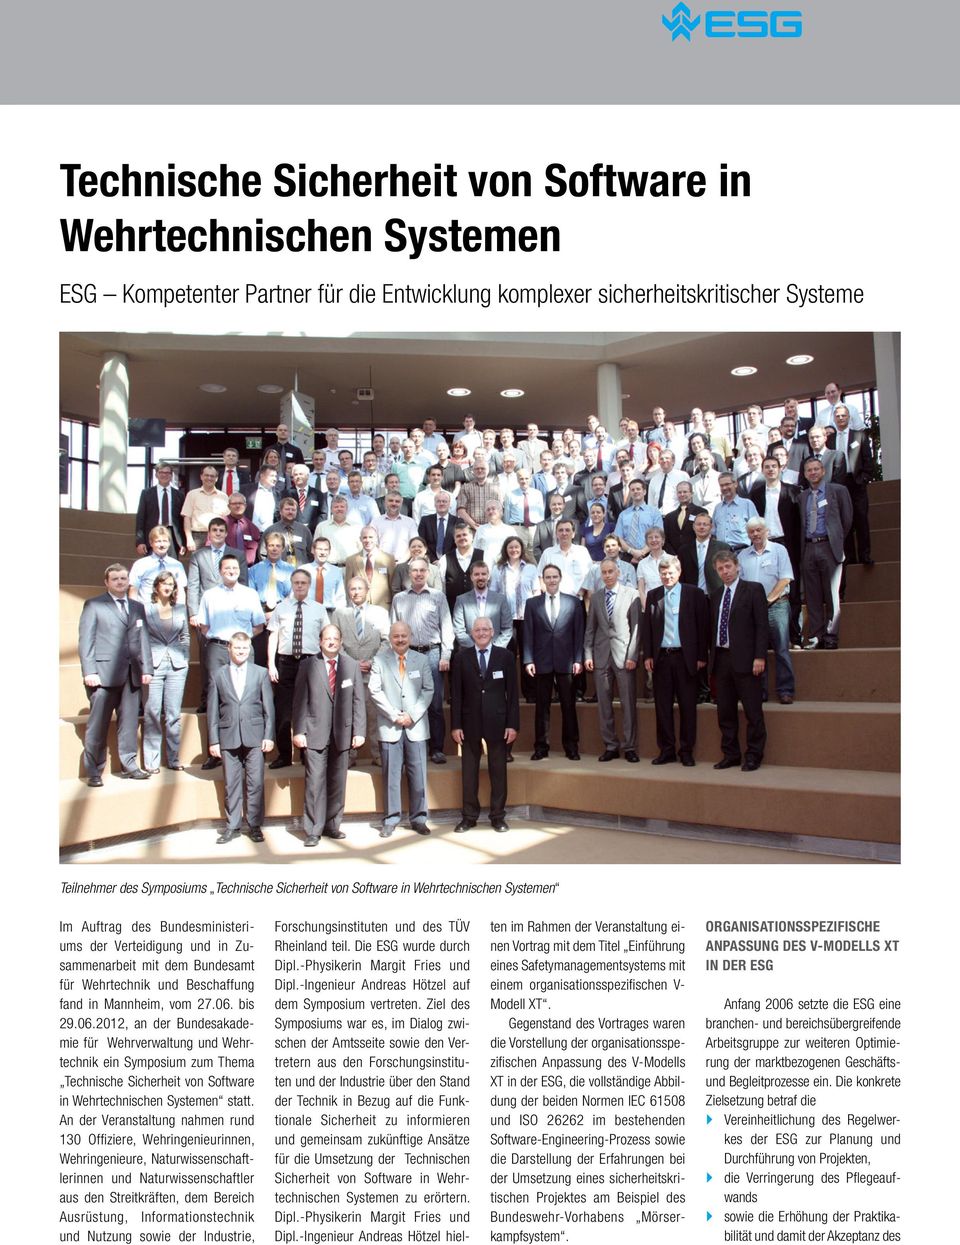 bis 29.06.2012, an der Bundesakademie für Wehrverwaltung und Wehrtechnik ein Symposium zum Thema Technische Sicherheit von Software in Wehrtechnischen Systemen statt.